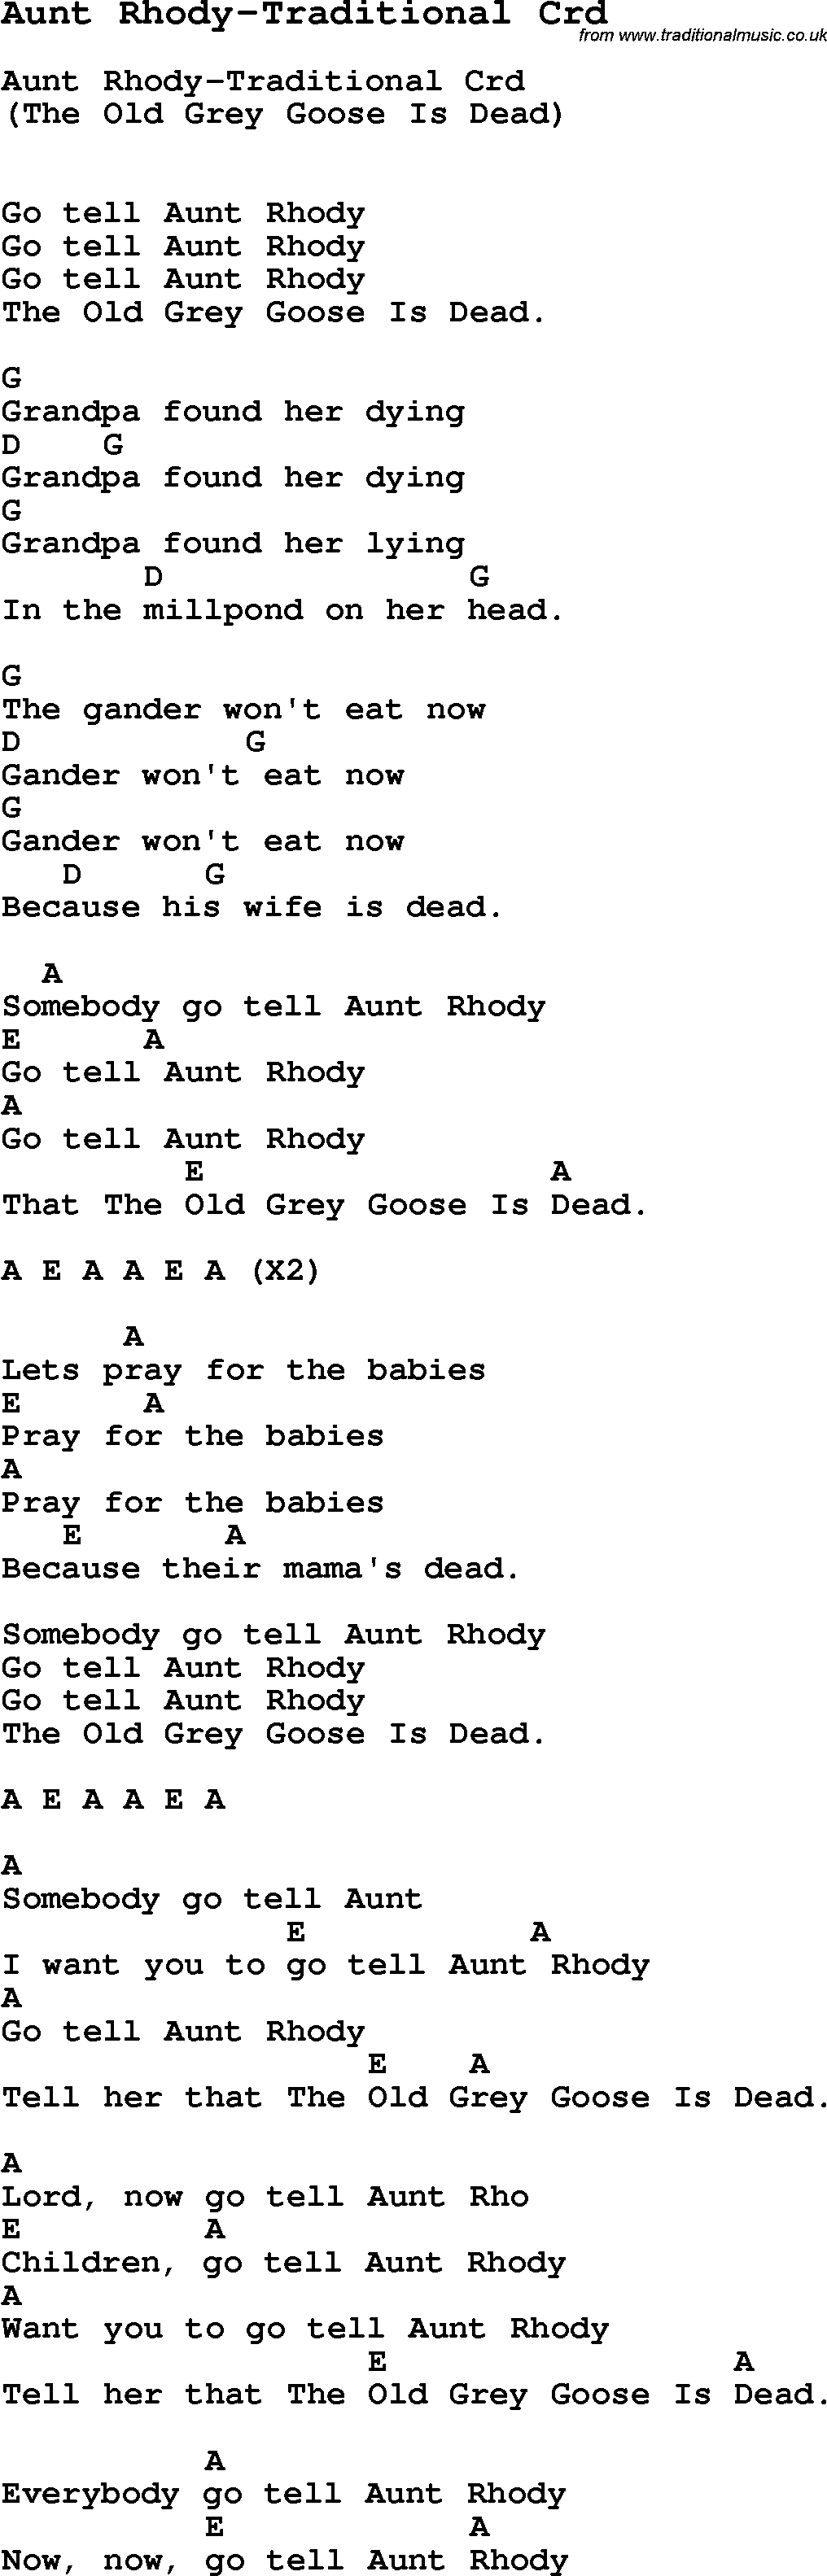 Skiffle Song Lyrics for Aunt Rhody-Traditional with chords for Mandolin, Ukulele, Guitar, Banjo etc.